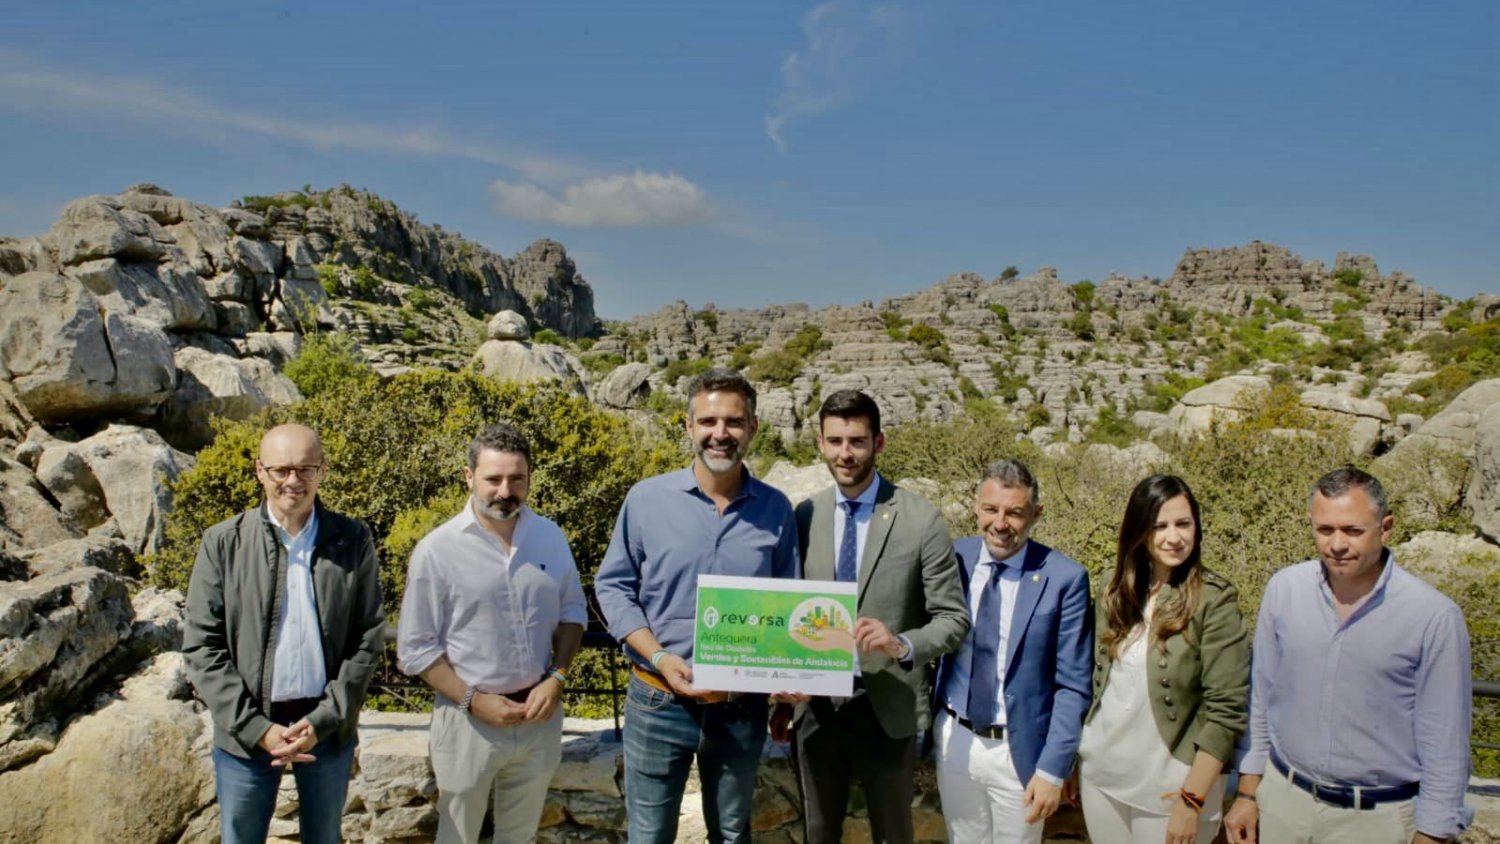 El Centro de Visitantes Torcal Alto de Antequera, el más frecuentado de los espacios protegidos de Andalucía